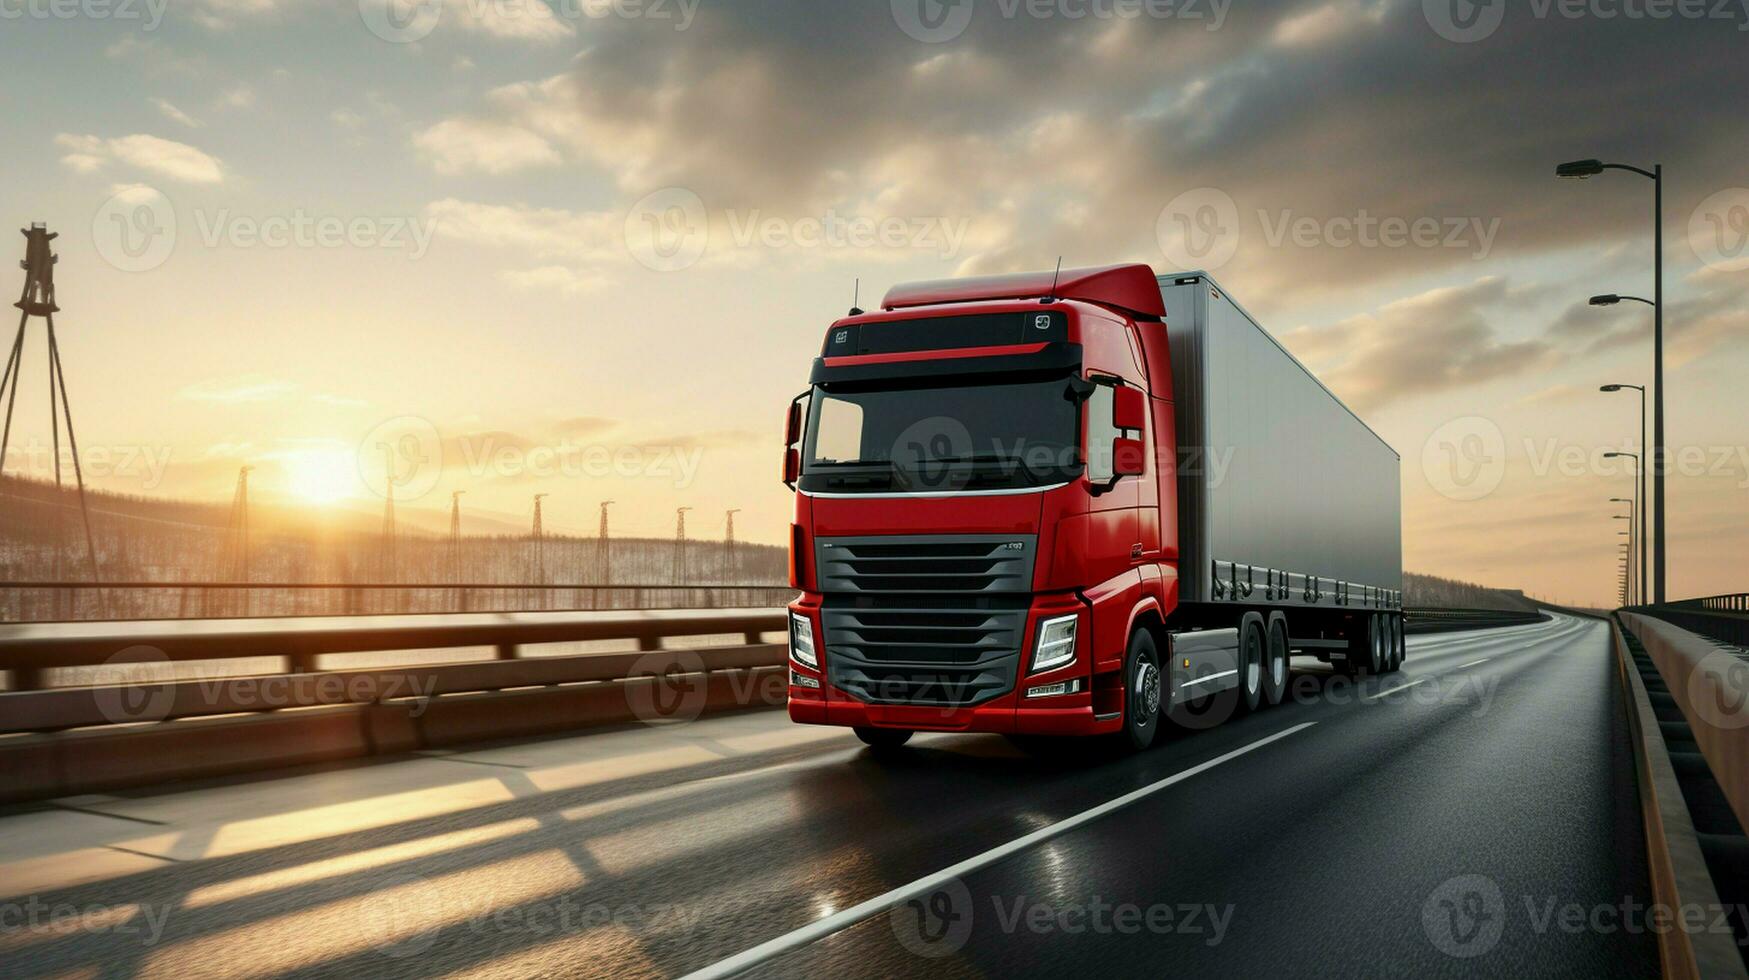 un carga camión con un envase es visto conducción a través de un puente, mientras un semi camión con un carga remolque sigue cercanamente detrás. foto